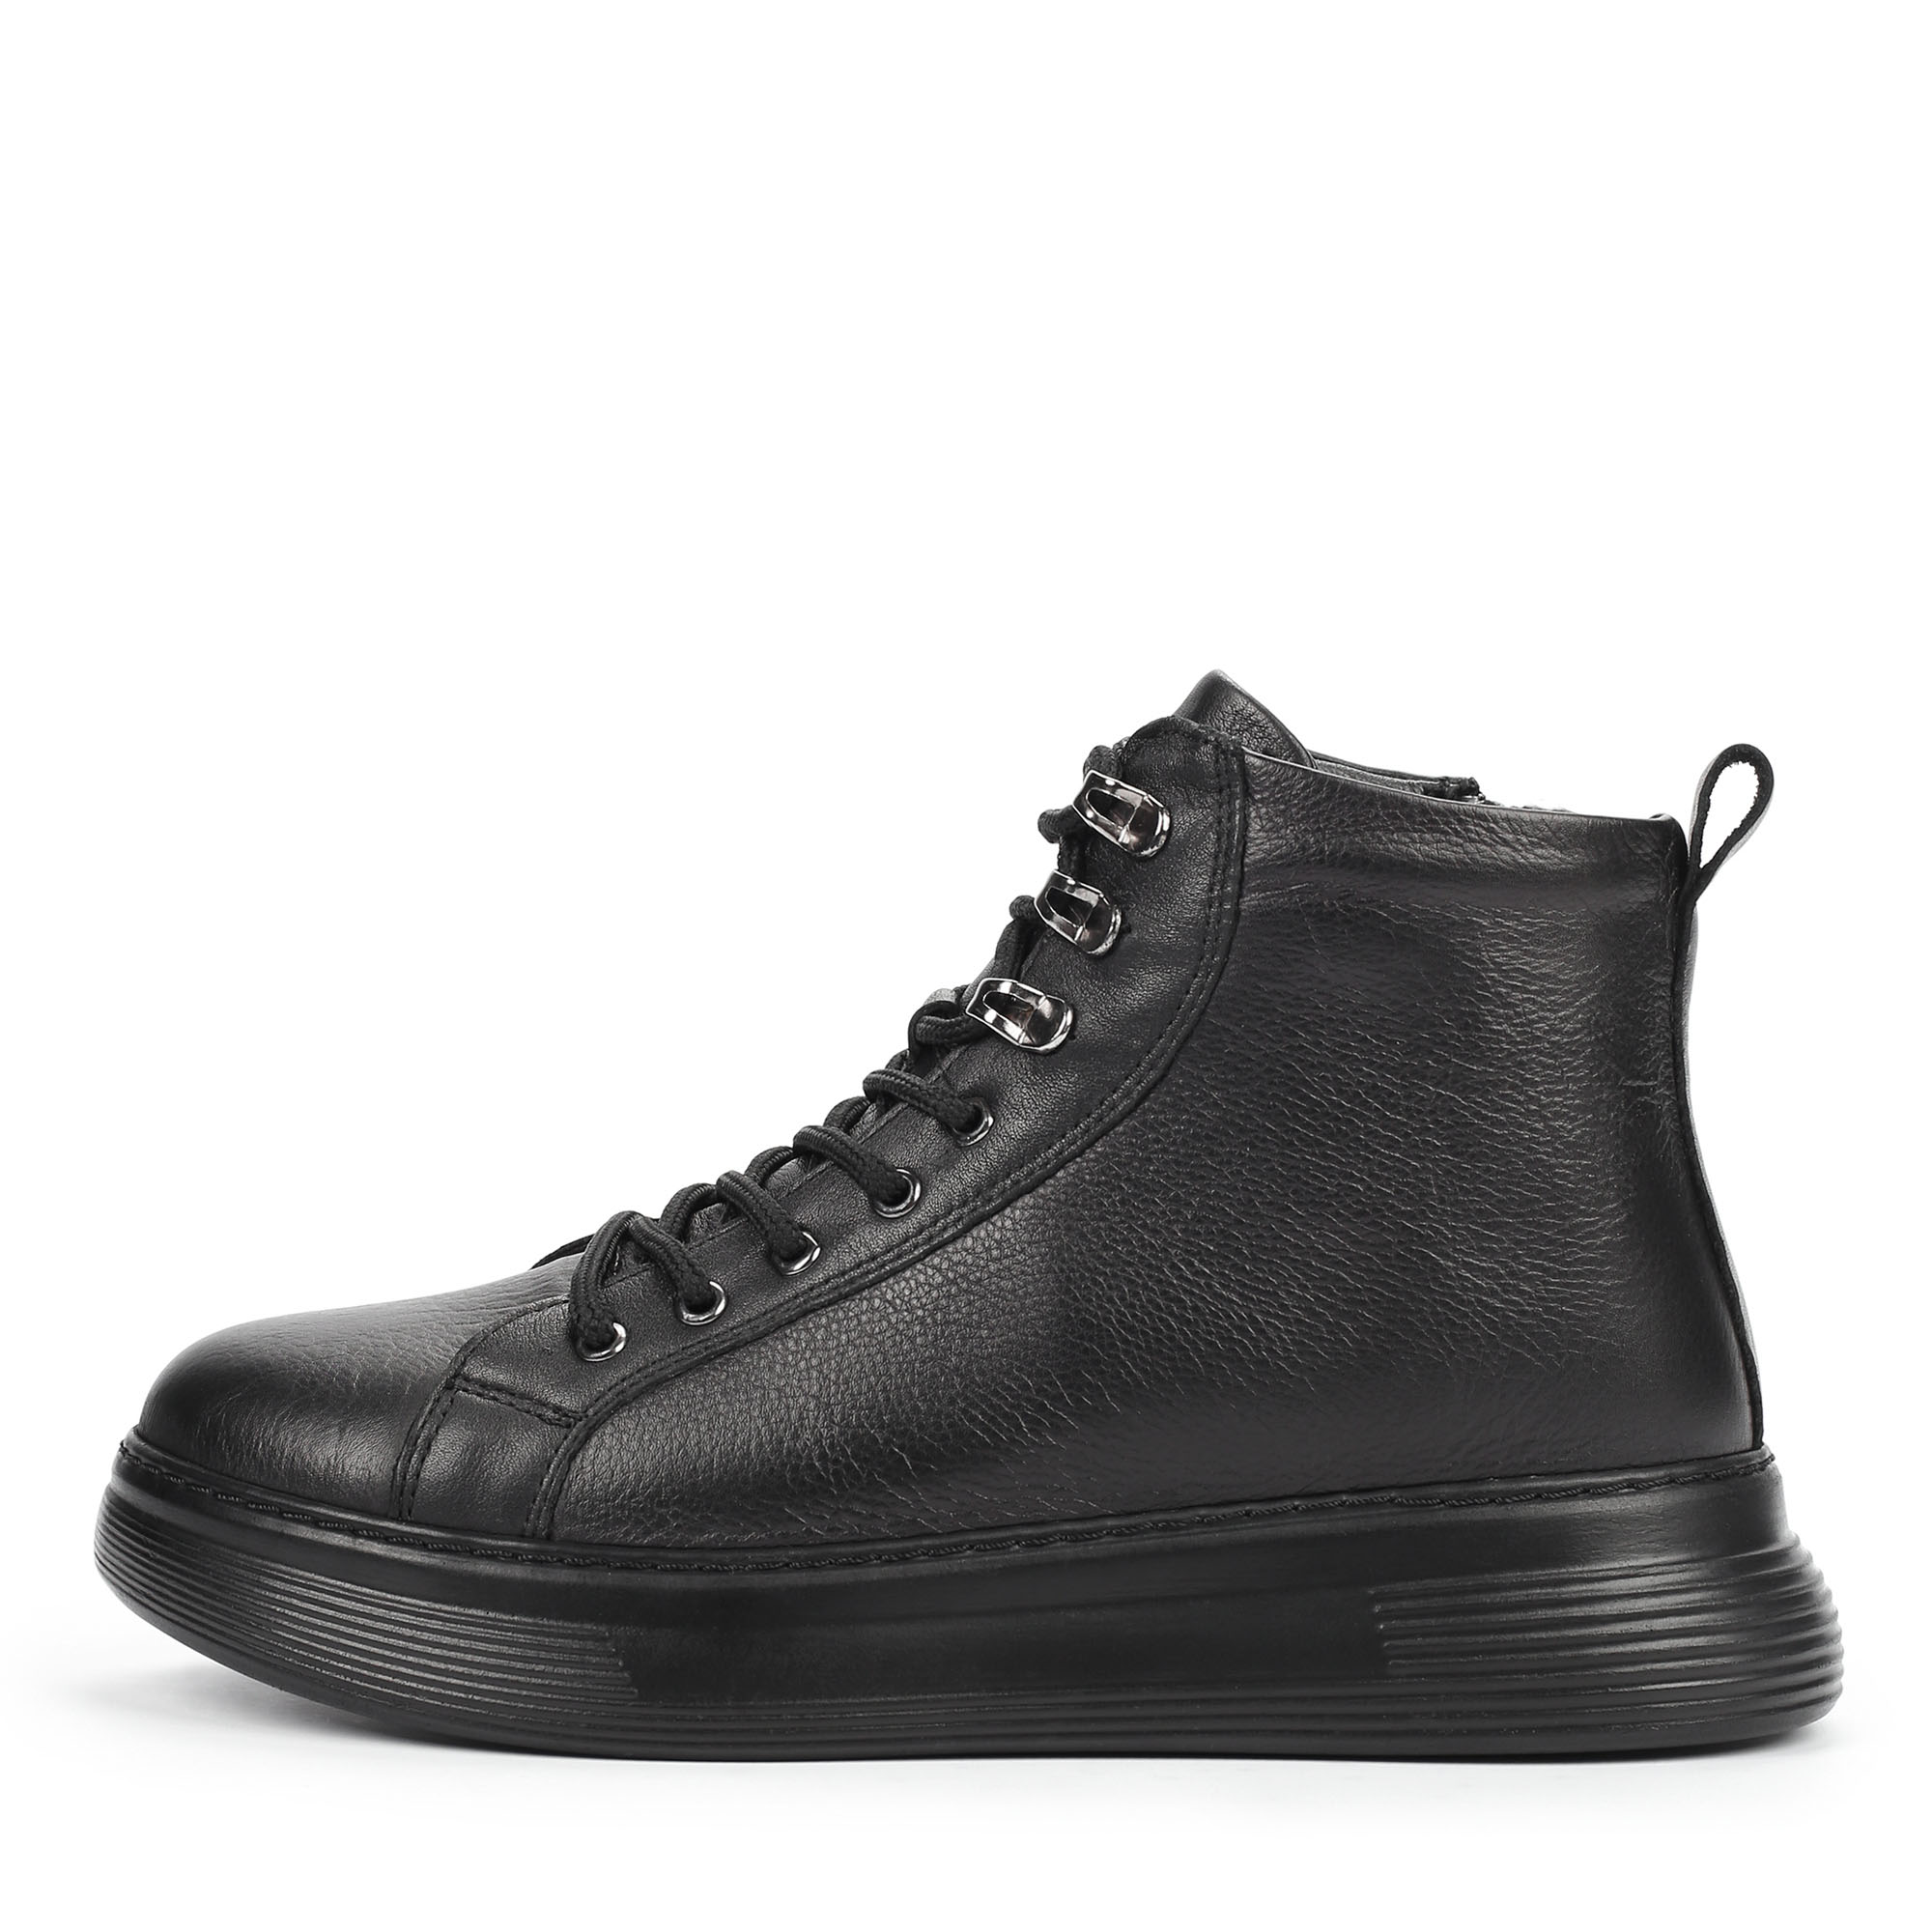 Ботинки Thomas Munz 558-036A-2102, цвет черный, размер 38